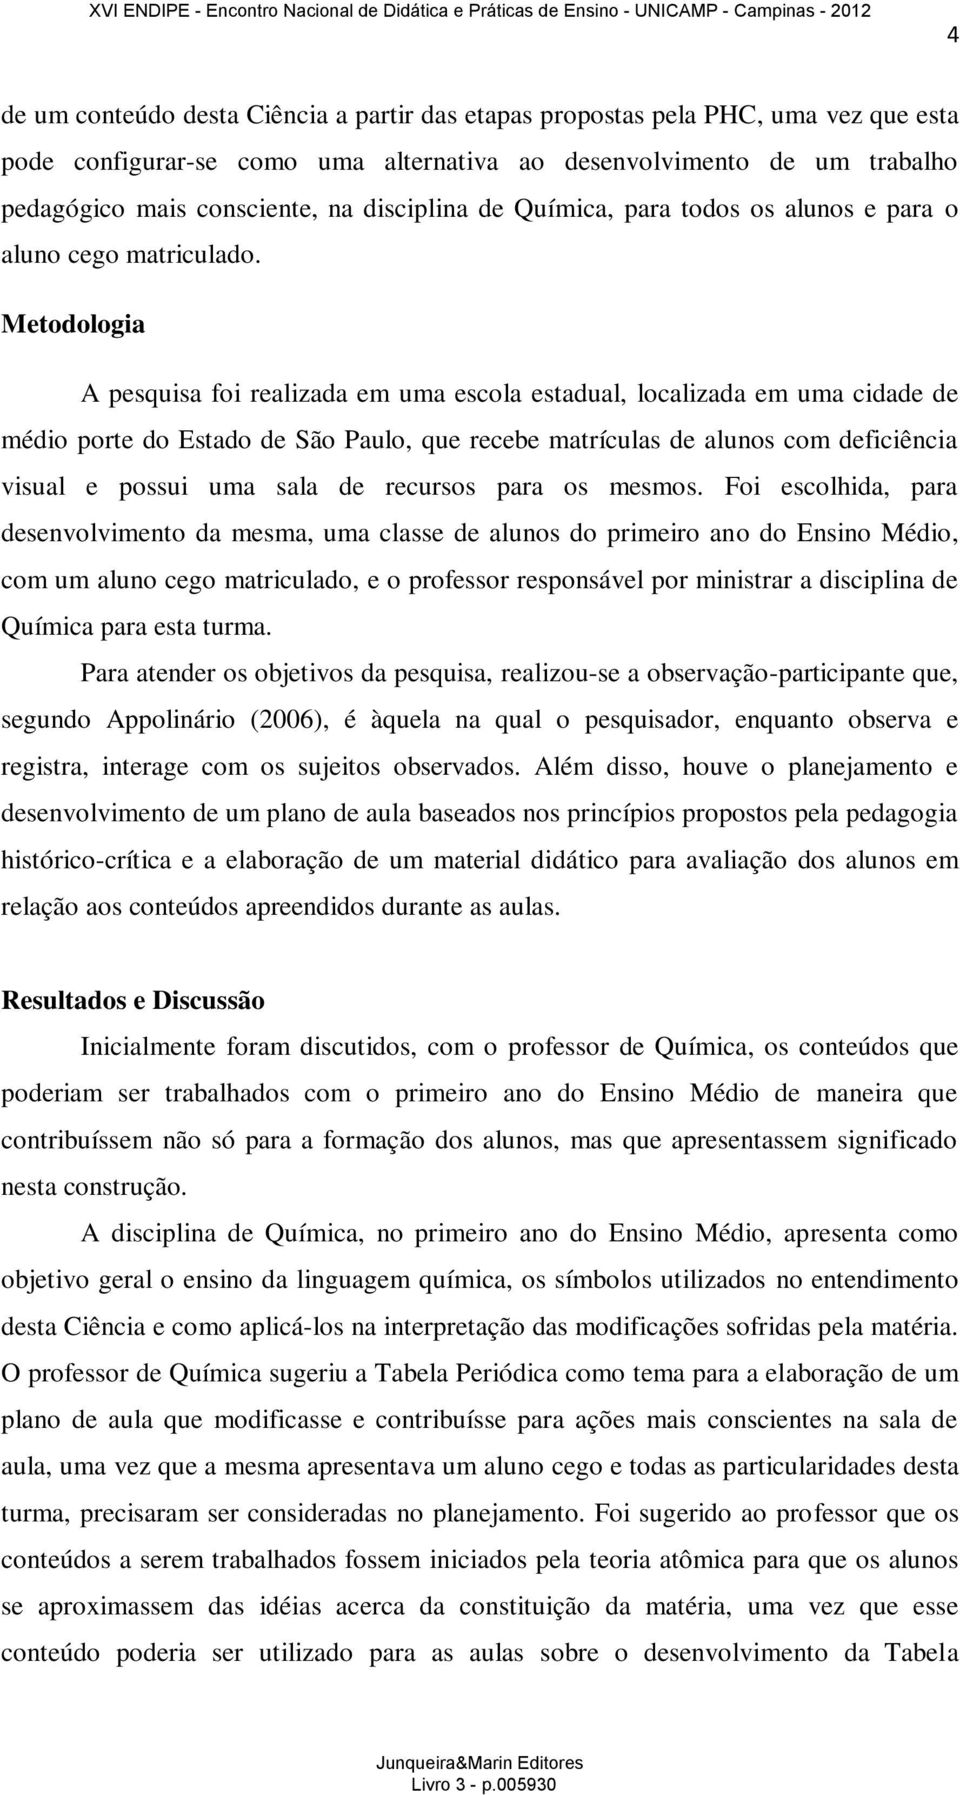 Metodologia A pesquisa foi realizada em uma escola estadual, localizada em uma cidade de médio porte do Estado de São Paulo, que recebe matrículas de alunos com deficiência visual e possui uma sala